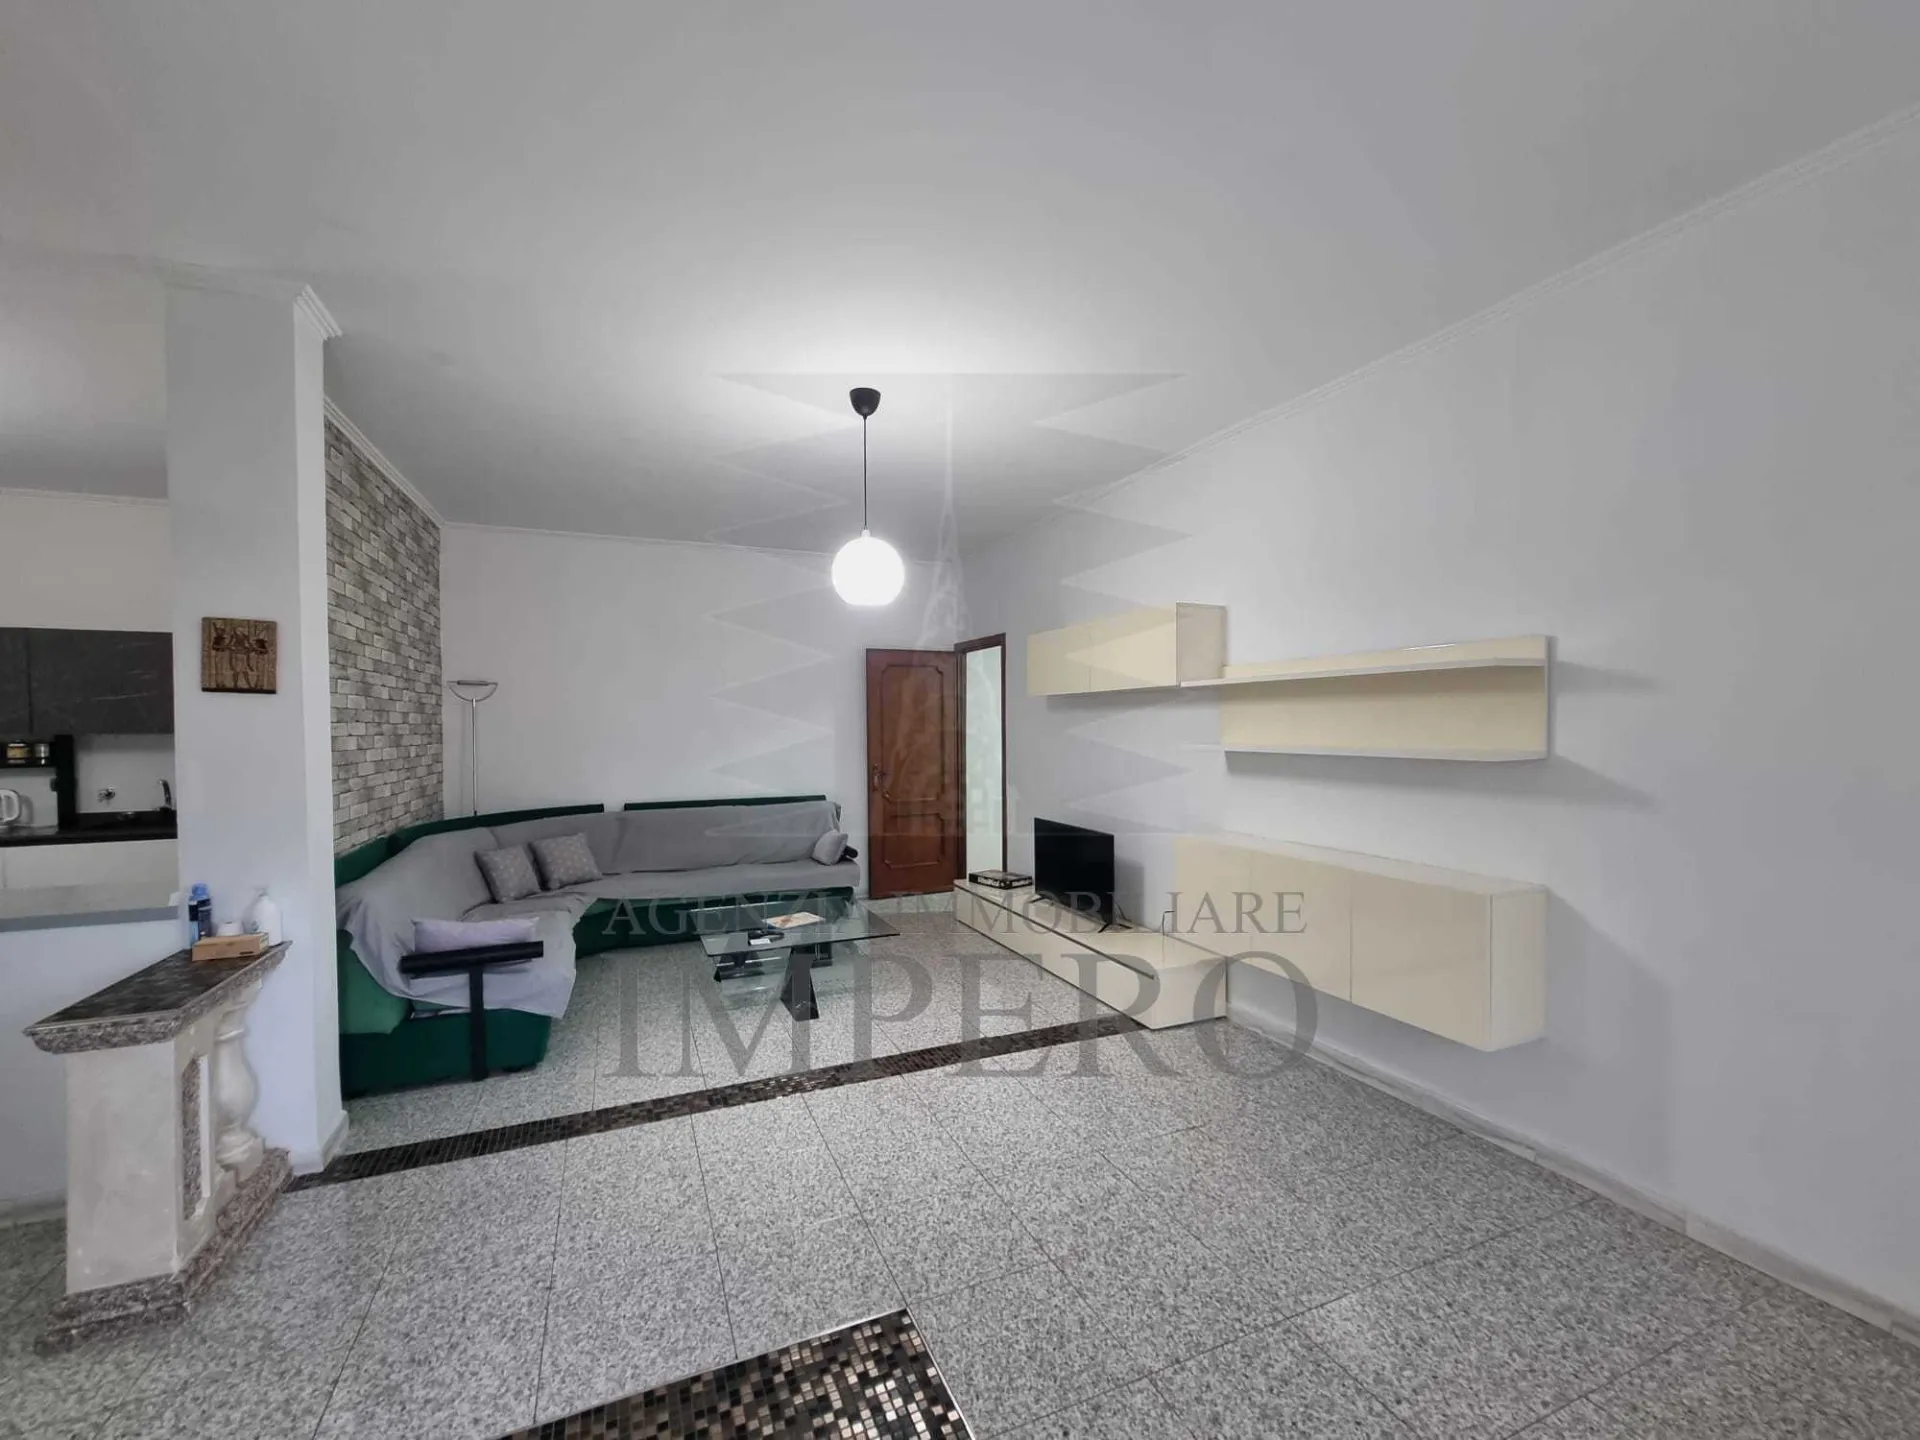 Immagine per Villa in vendita a Ventimiglia 3